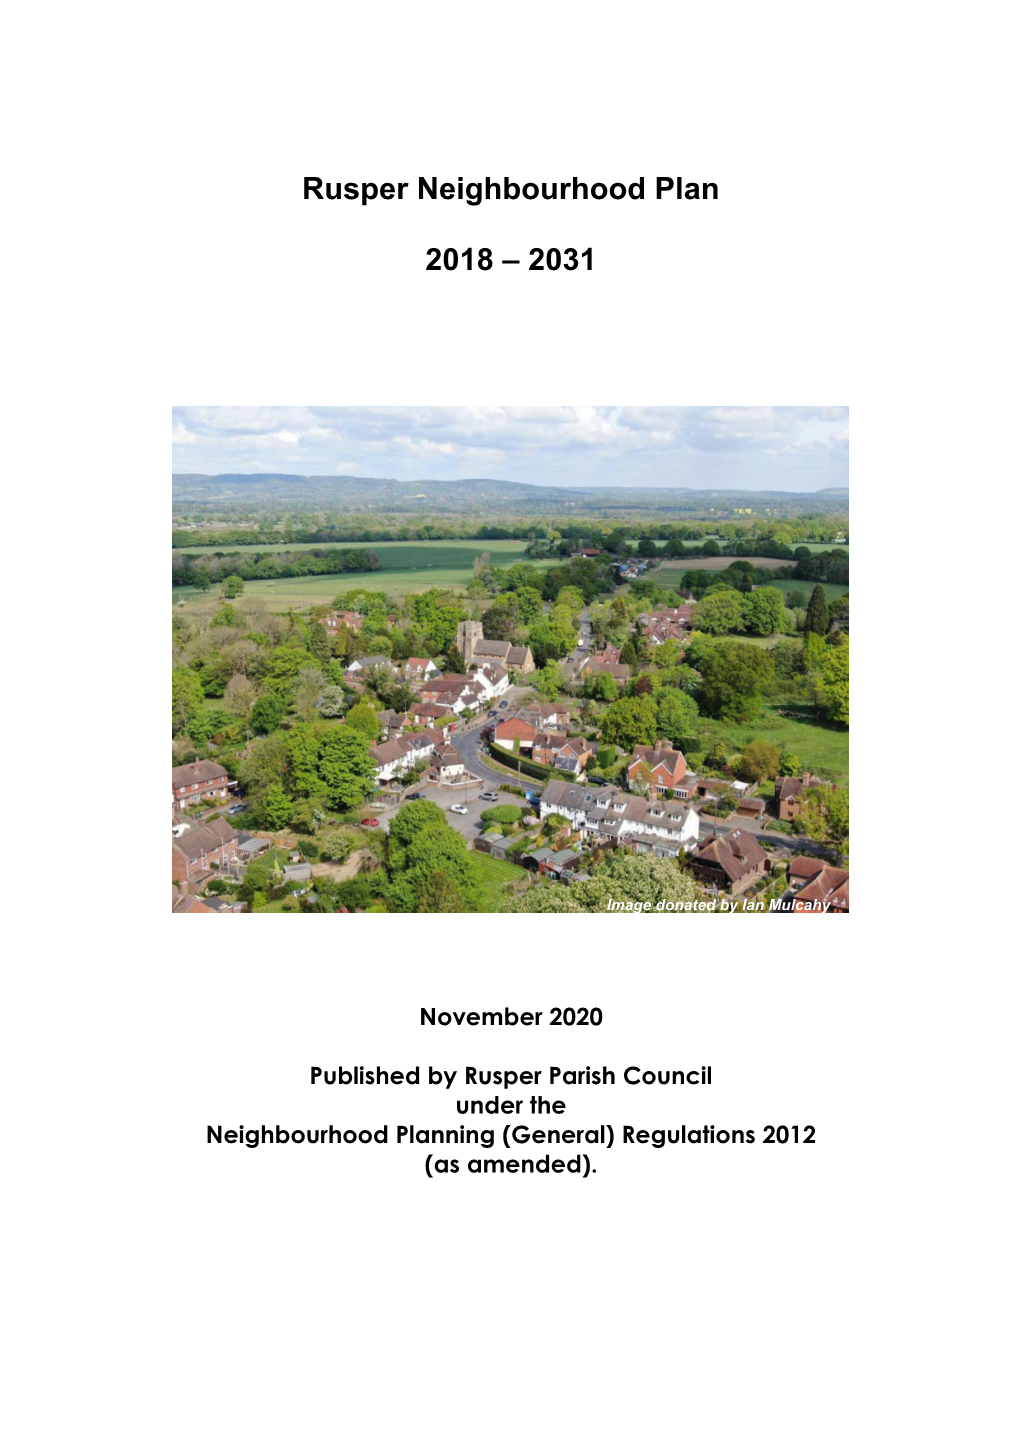 Rusper Neighbourhood Plan (November 2020)